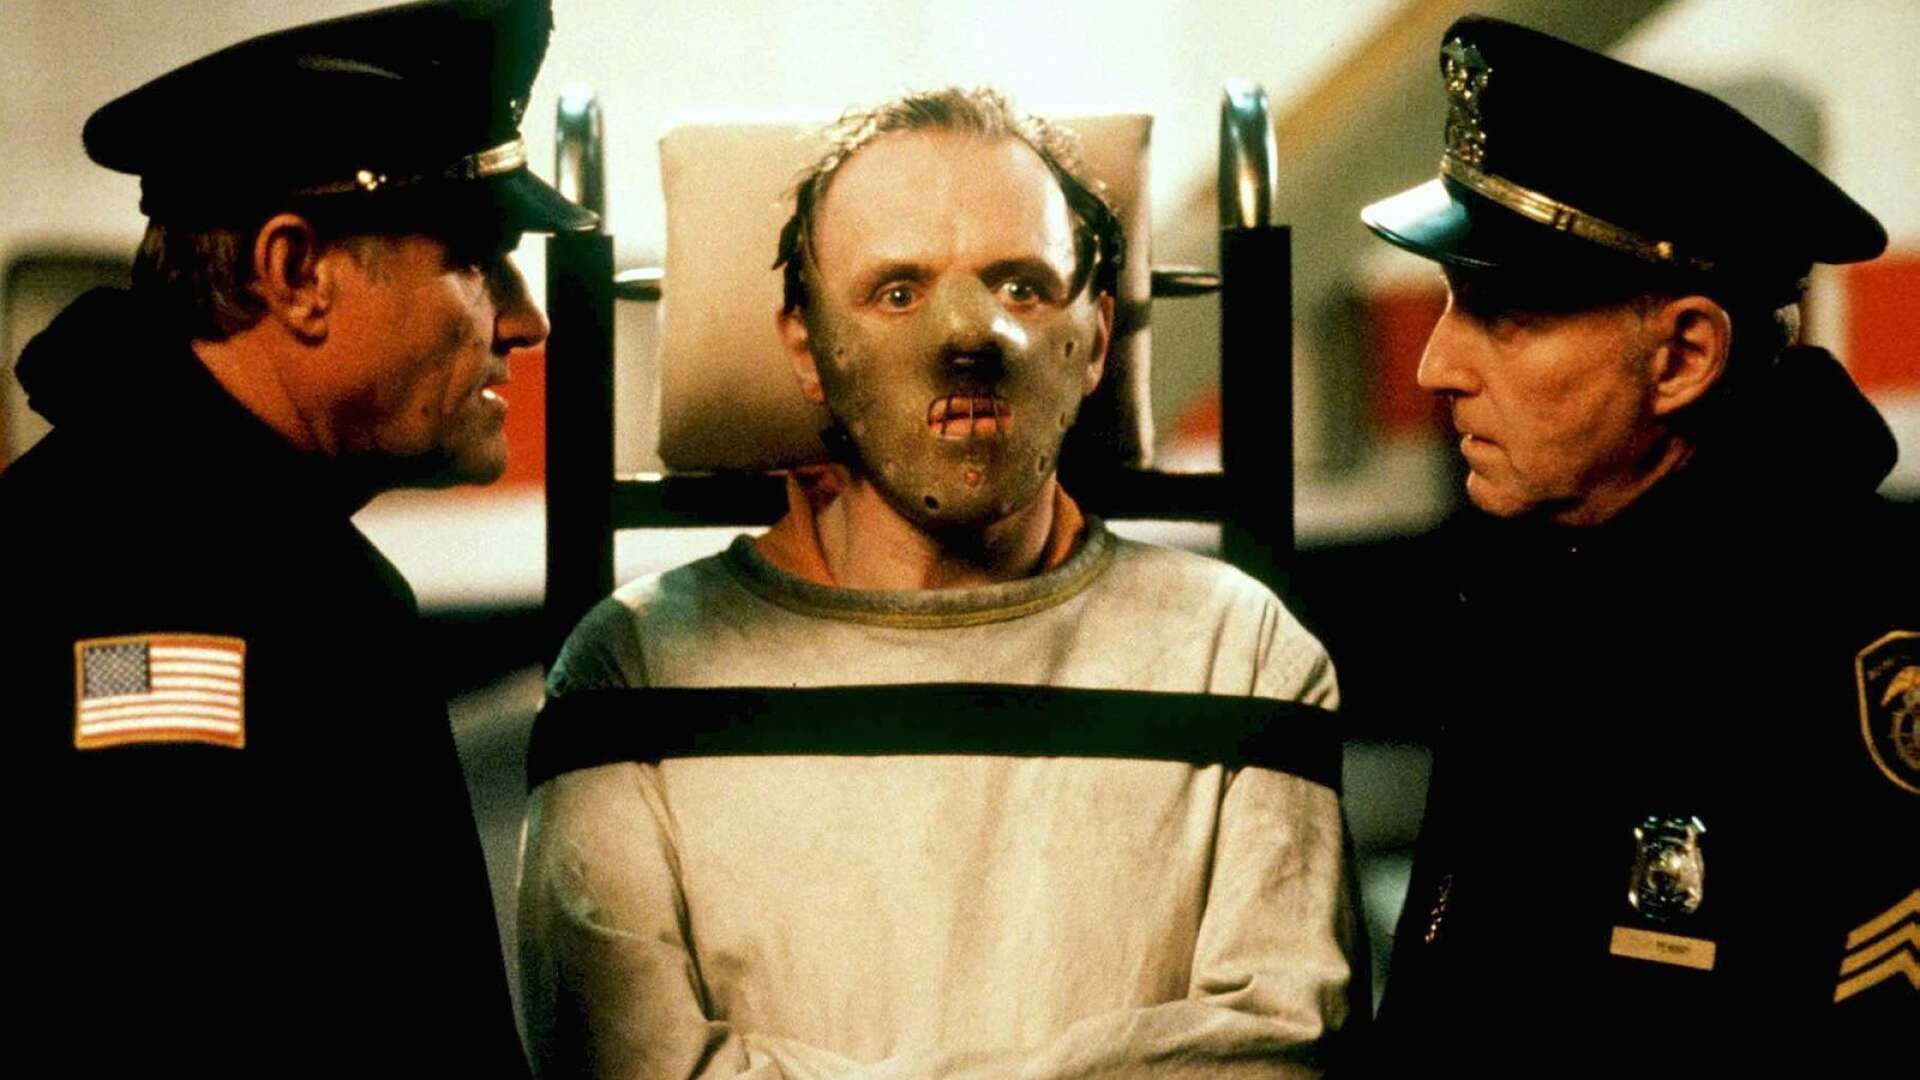 Hannibal Lecter – psykopat förkroppsligad av Anthony Hopkins i Ridley Scotts film från 2001.